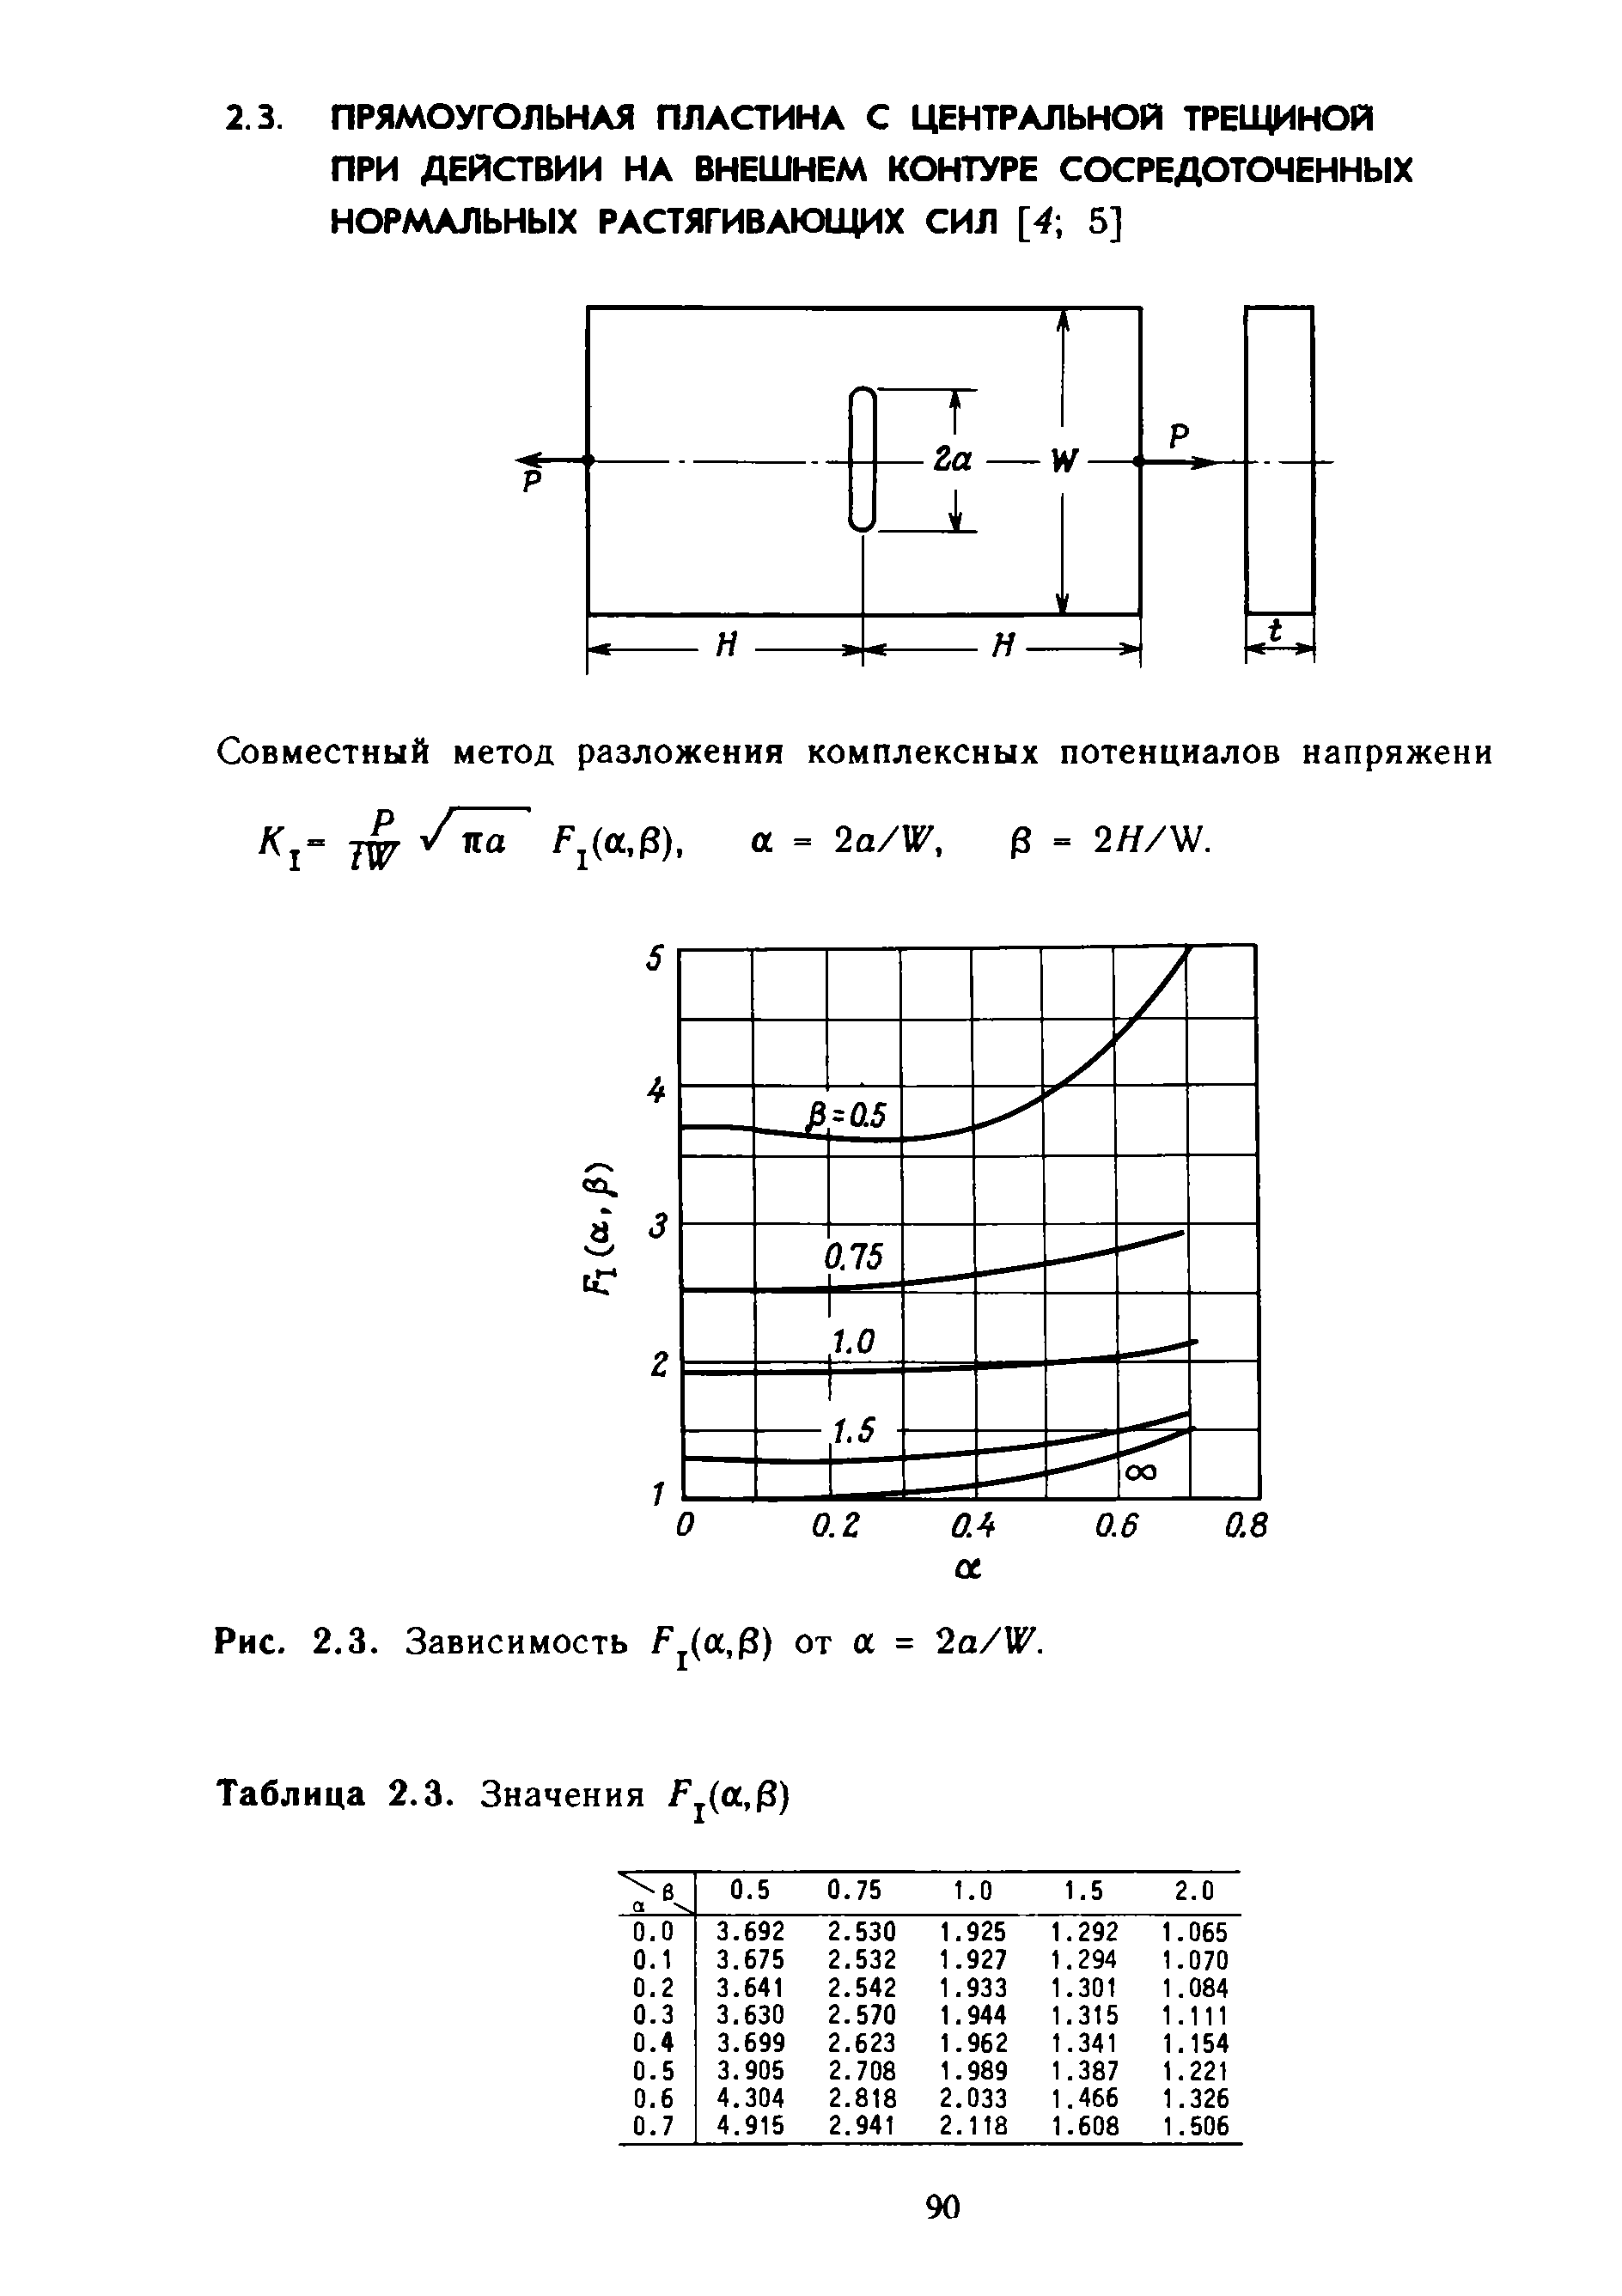 Совместный метод разложения комплексных потенциалов напряжени TW Э = 2Я/Ш.
